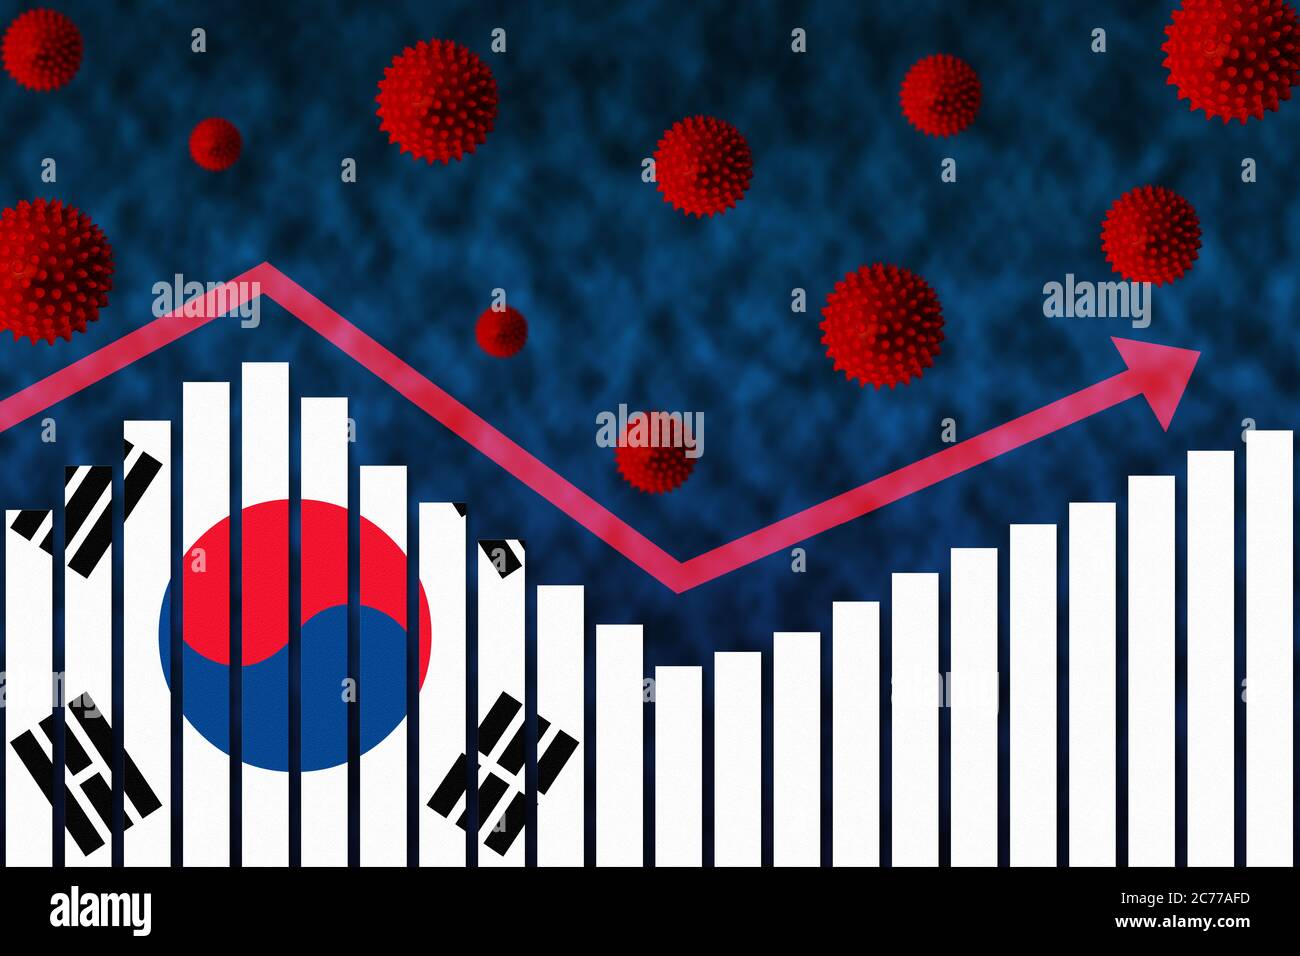 Flagge Südkoreas auf der Balkendiagrammkarte Konzept der COVID-19 Coronavirus-Infektionen mit zweiter Welle nach der ersten Welle, dargestellt durch Grafik und Virussymbole Stockfoto